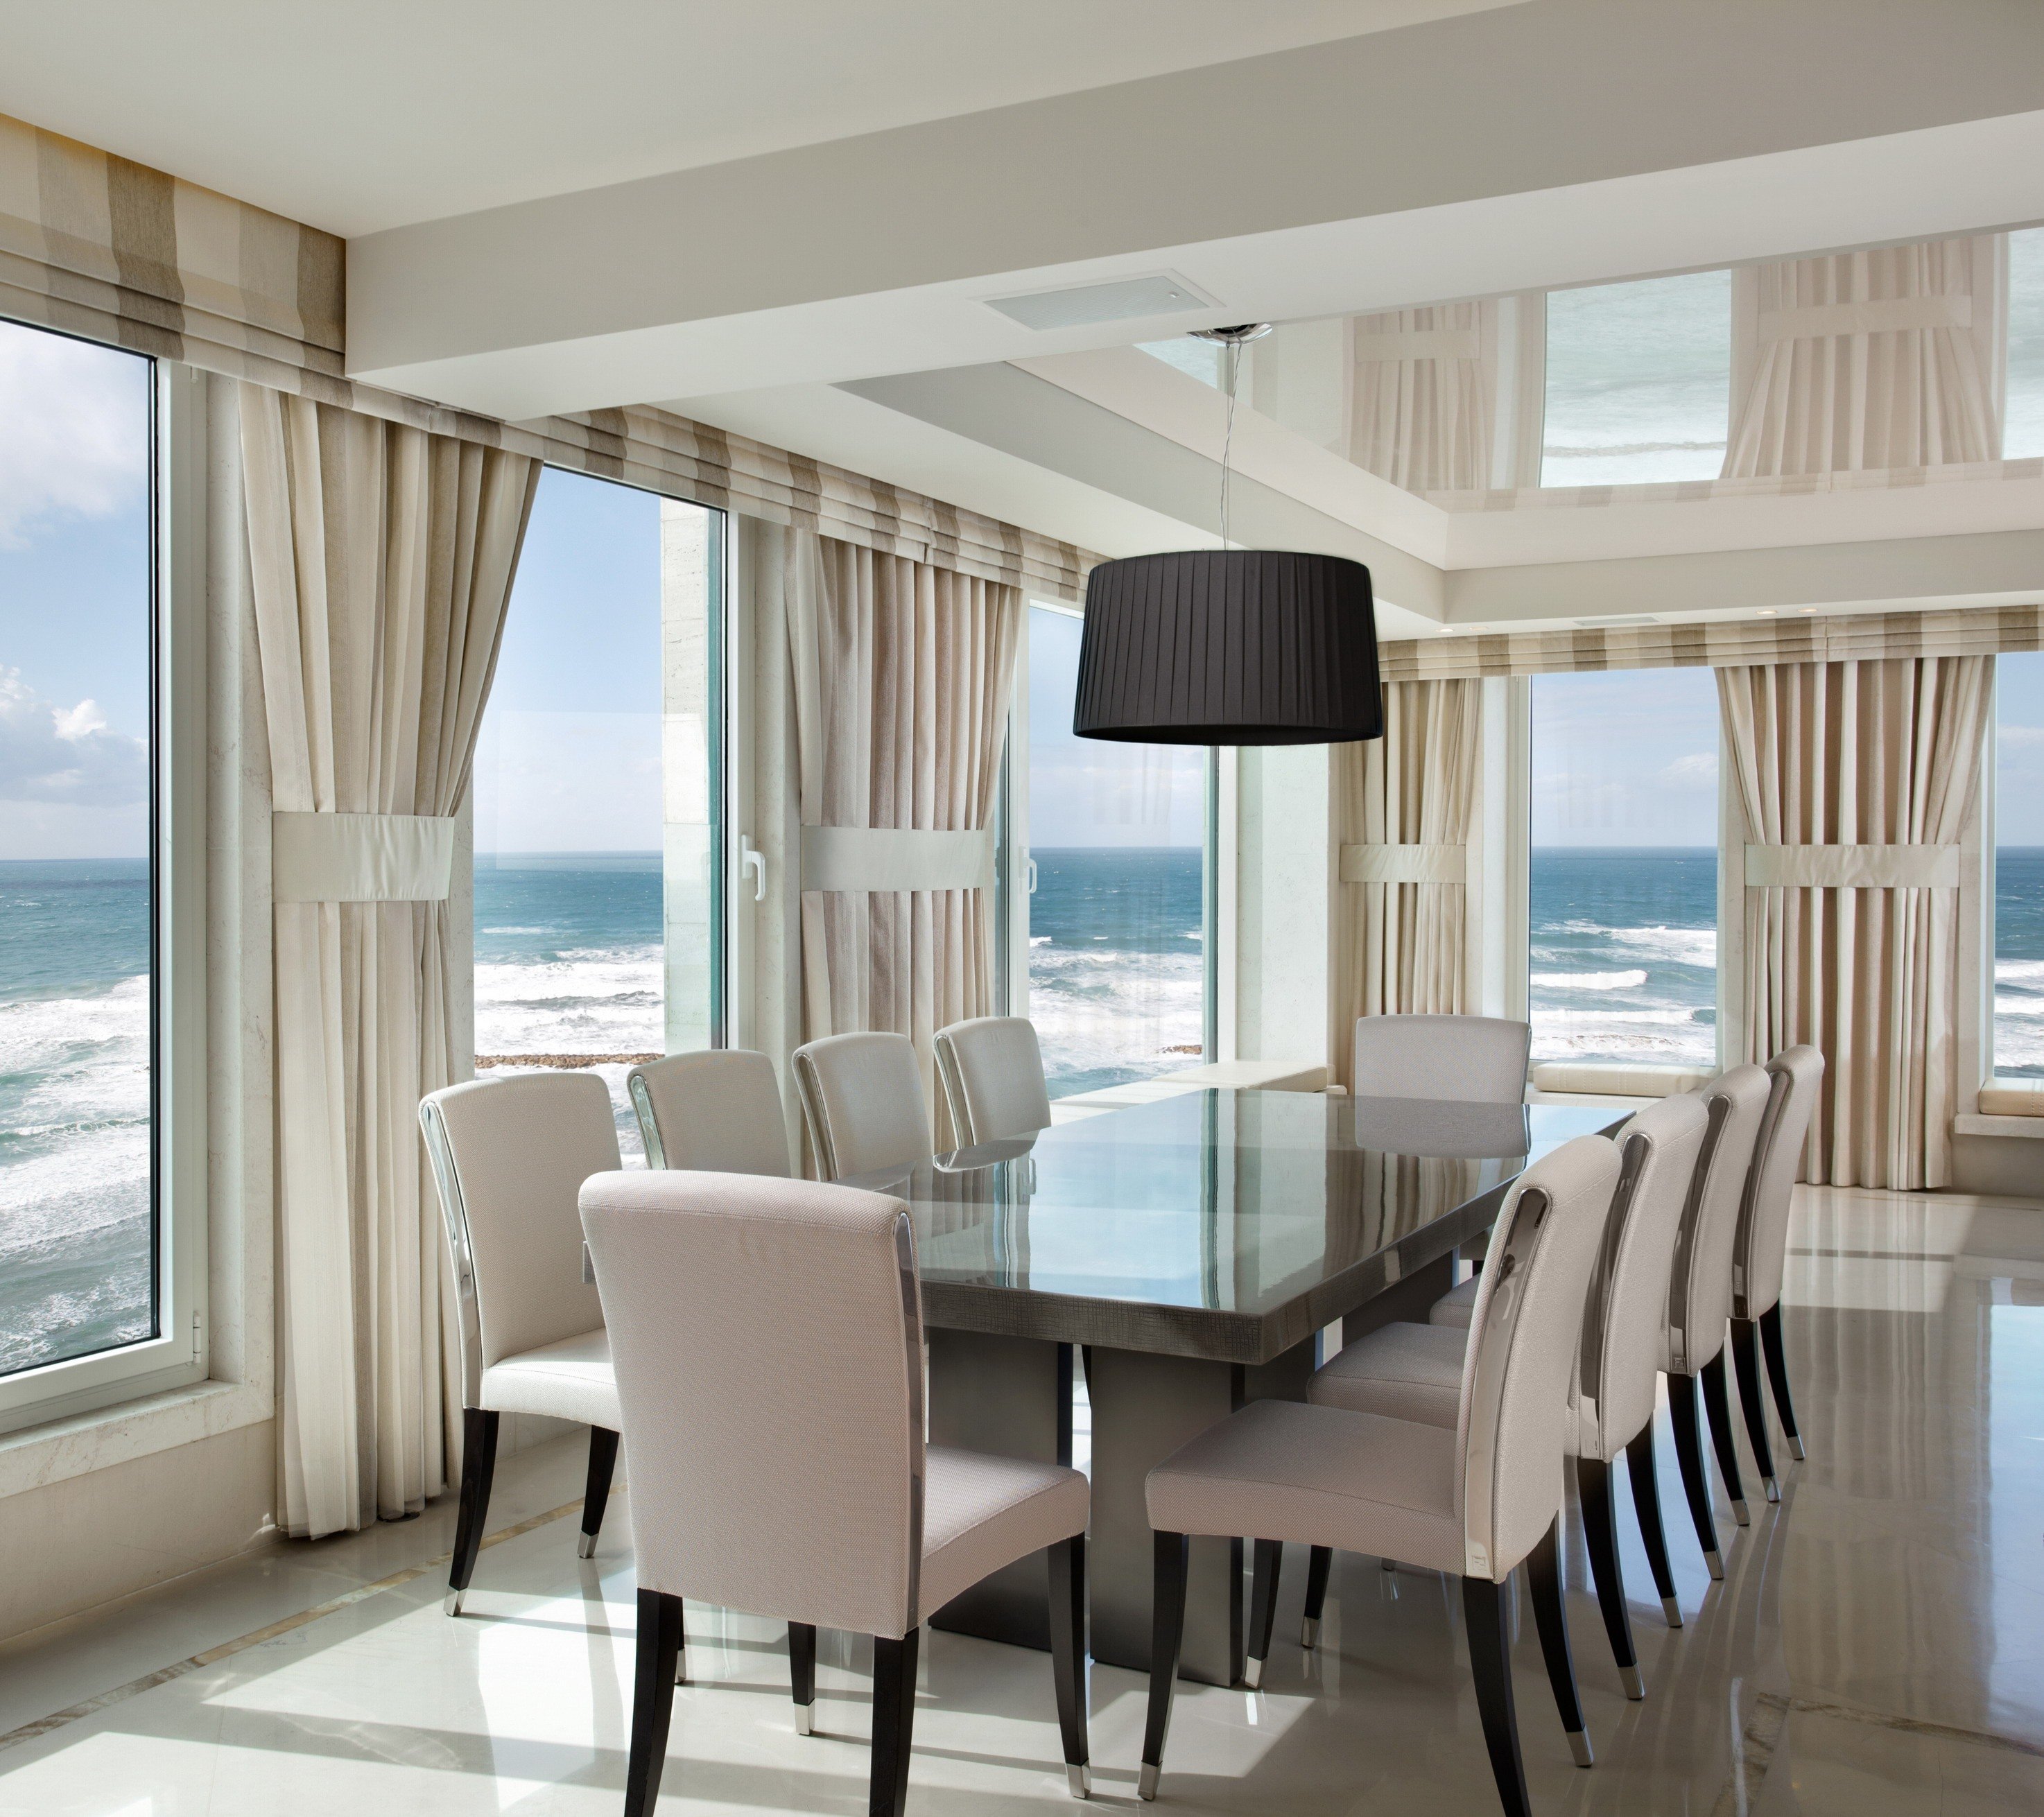 Столовая море. Шторы на панорамные окна. Столовая с панорамными окнами. Квартира с видом на море. Гостиная с видом на море.